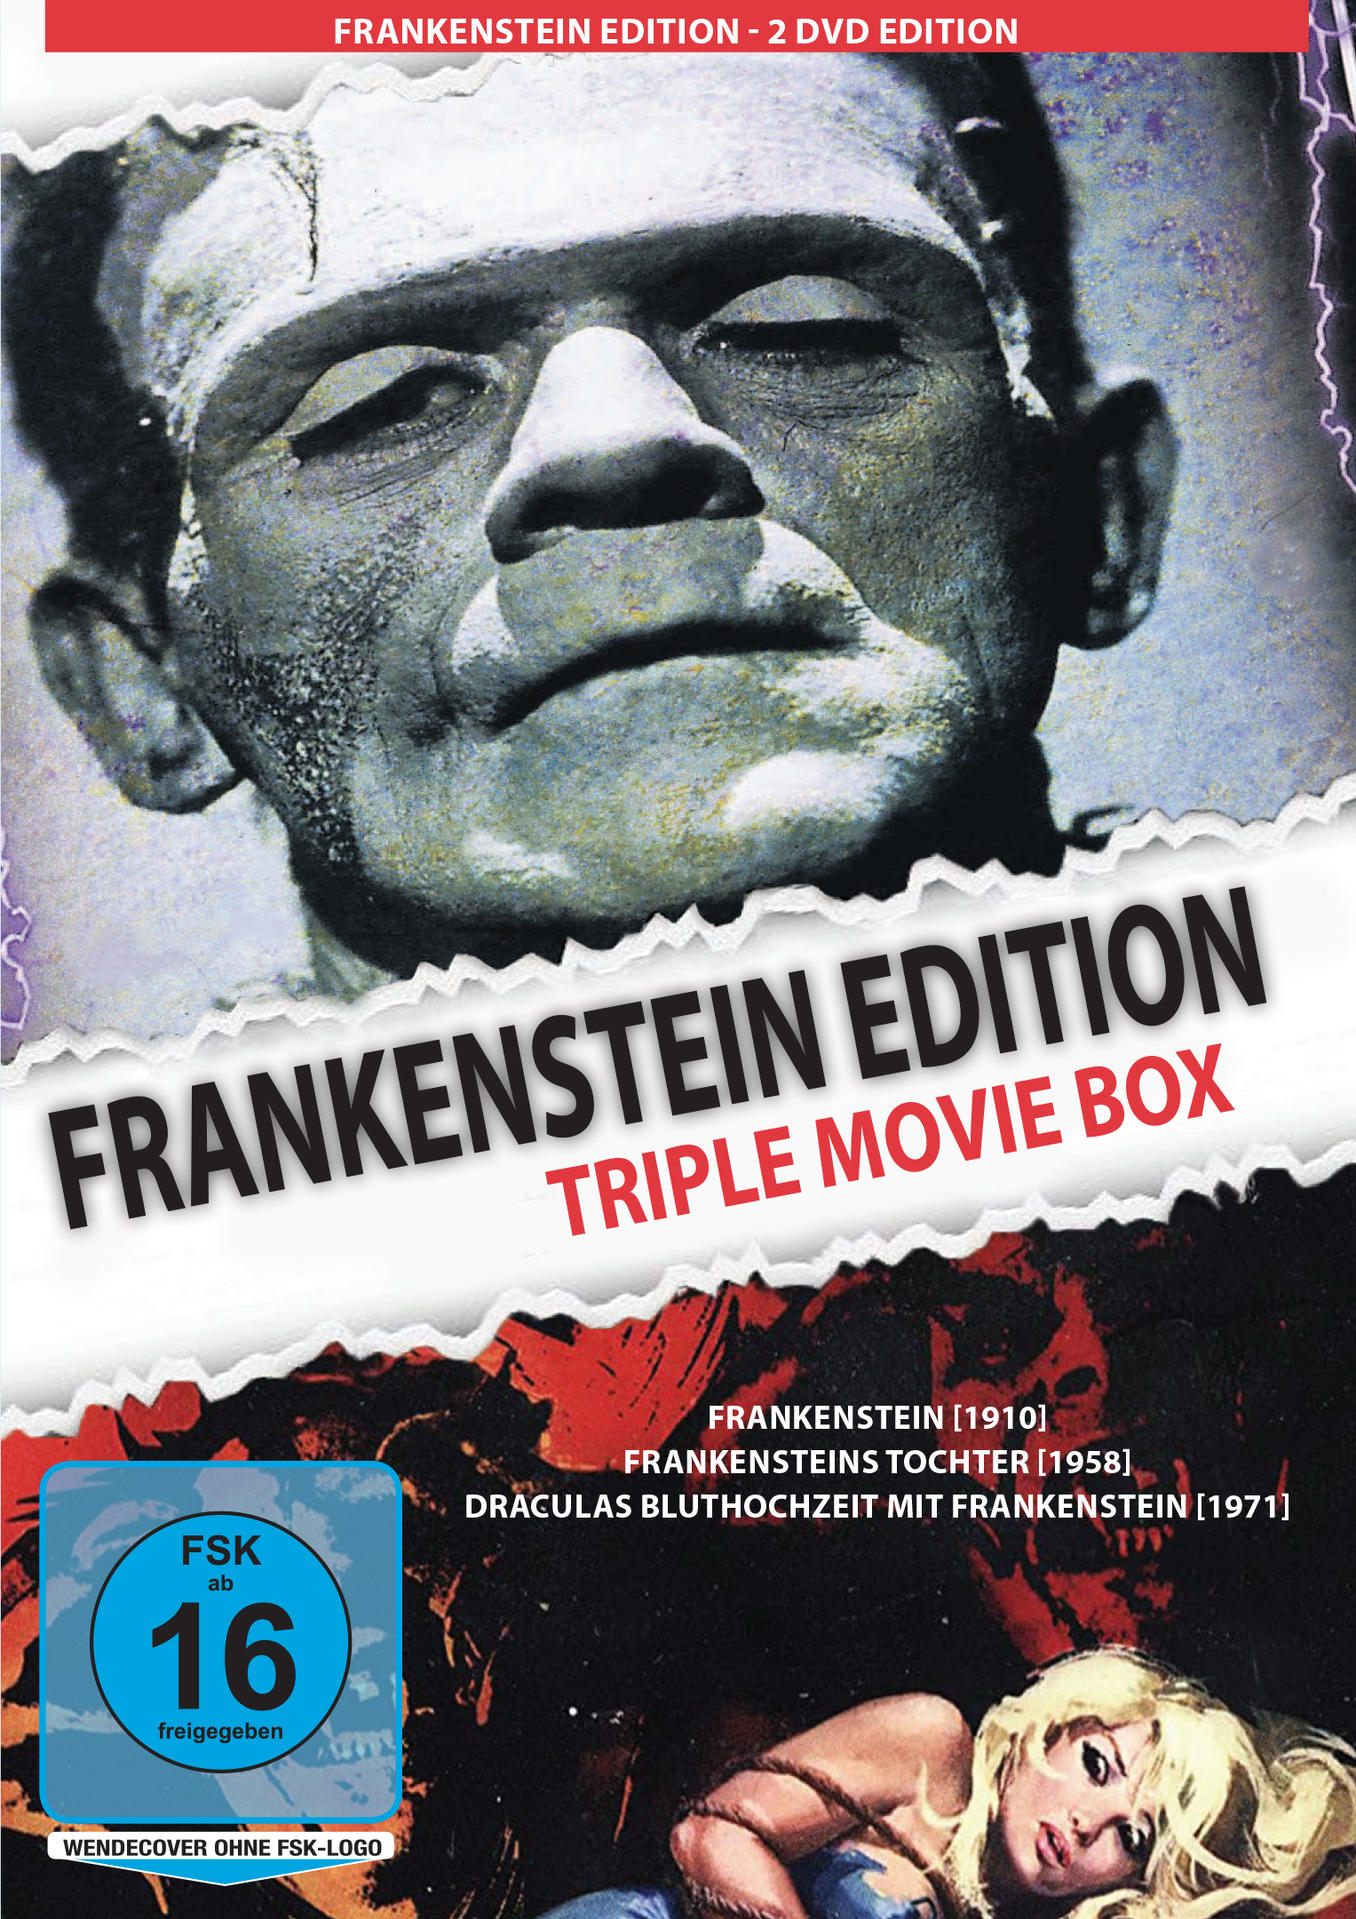 FRANKENSTEIN EDITION (TRIPLE DVD BOX) MOVIE